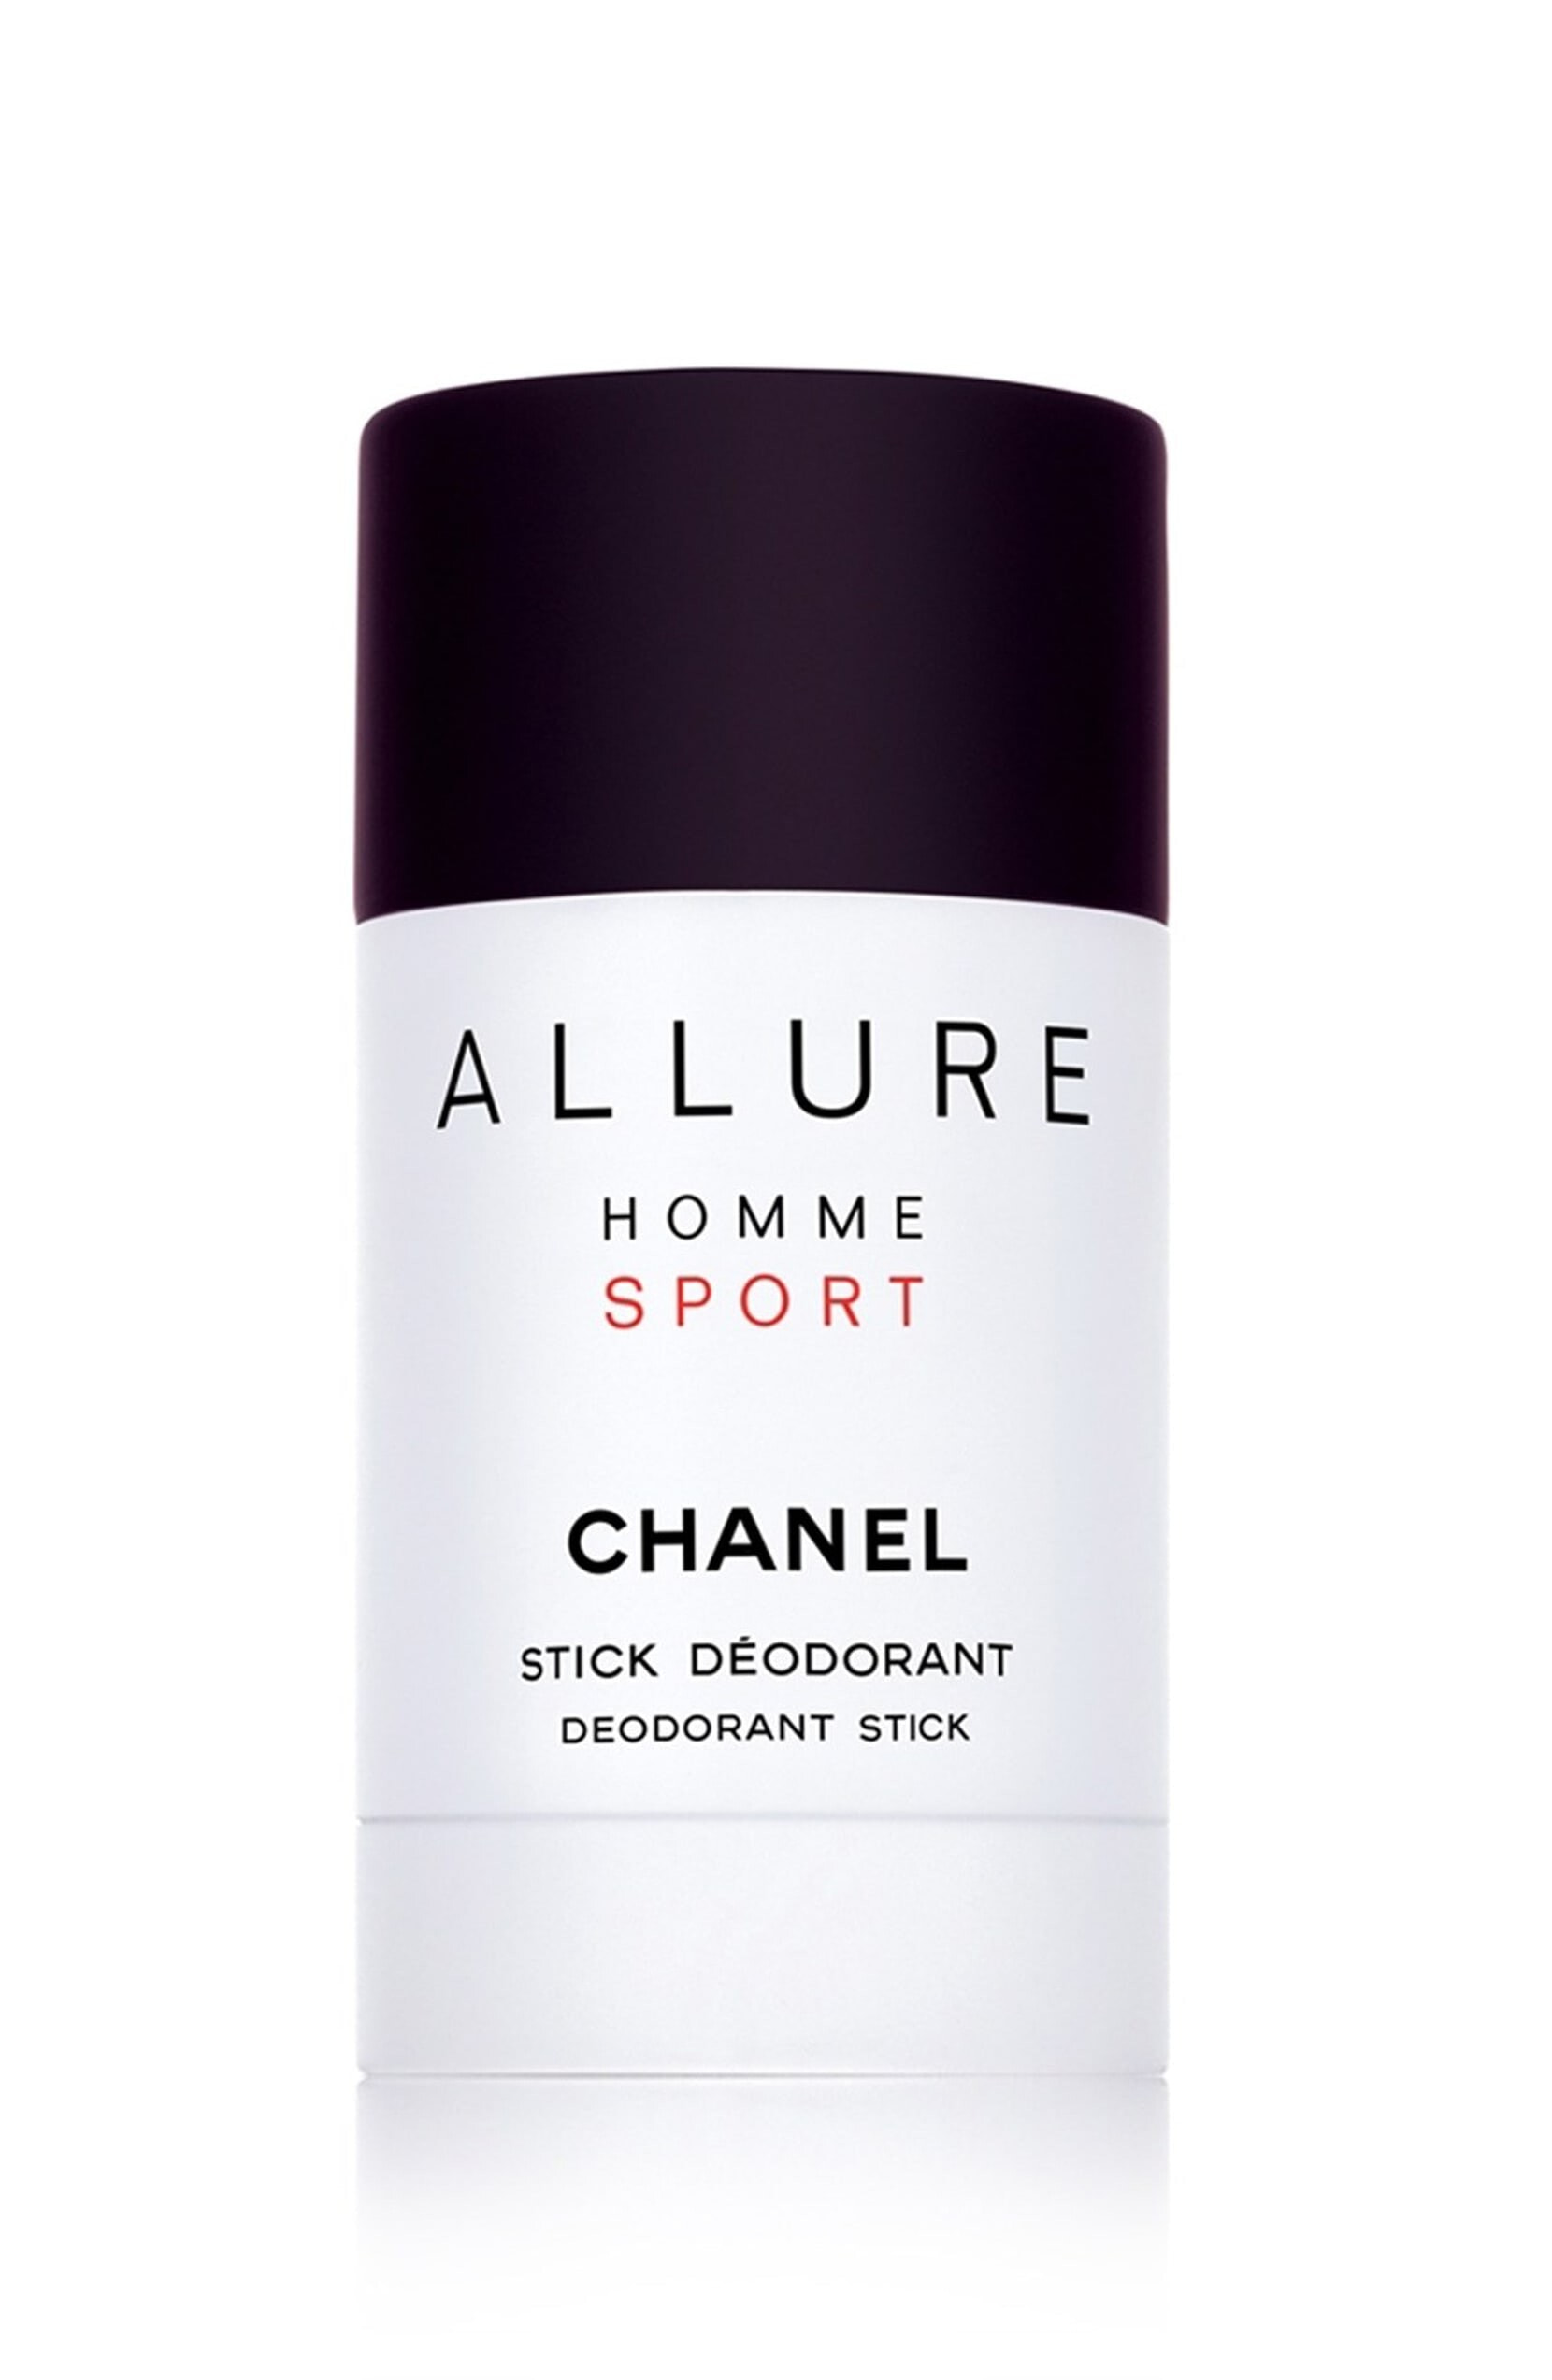 Chanel Homme Sport Deo Stick Парфюмированный дезодорант-стик 75 г